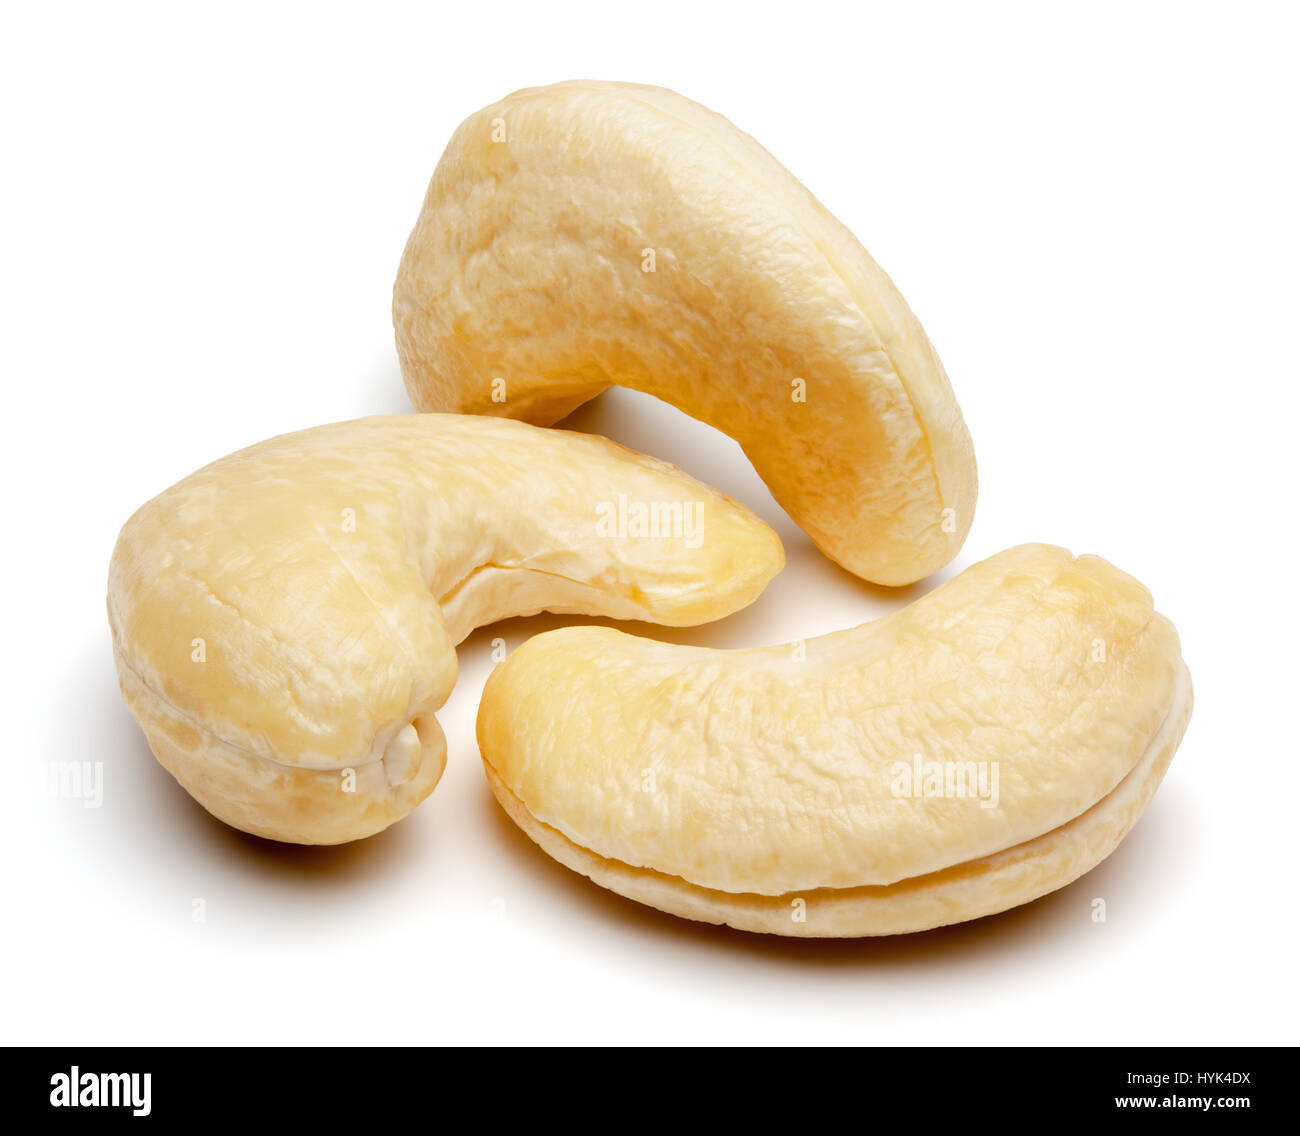 Nahaufnahme von Cashew-Nüssen, auf dem weißen Hintergrund isoliert Schneidepfad enthalten. Stockfoto